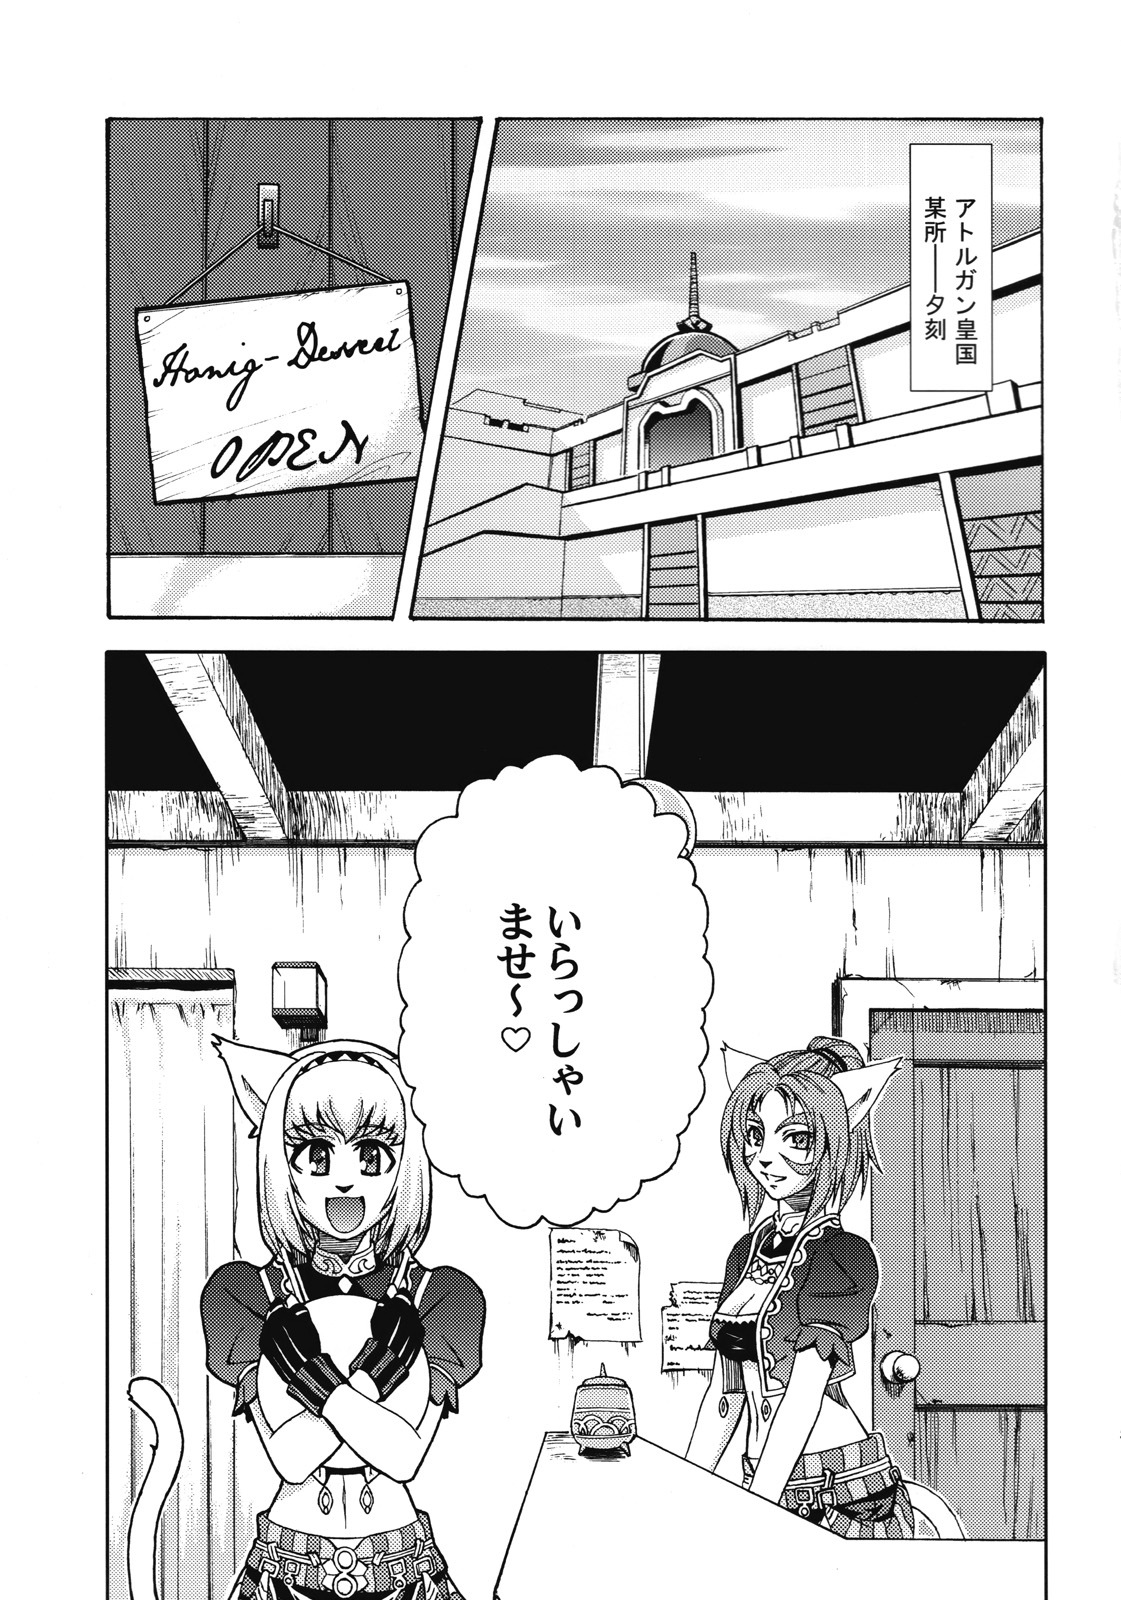 [ARCHENEMY (Kasumi Ryo)] Ein Joghurt wie ein Honig-Dessert. EXTENDED EDITION (Final Fantasy XI) page 4 full